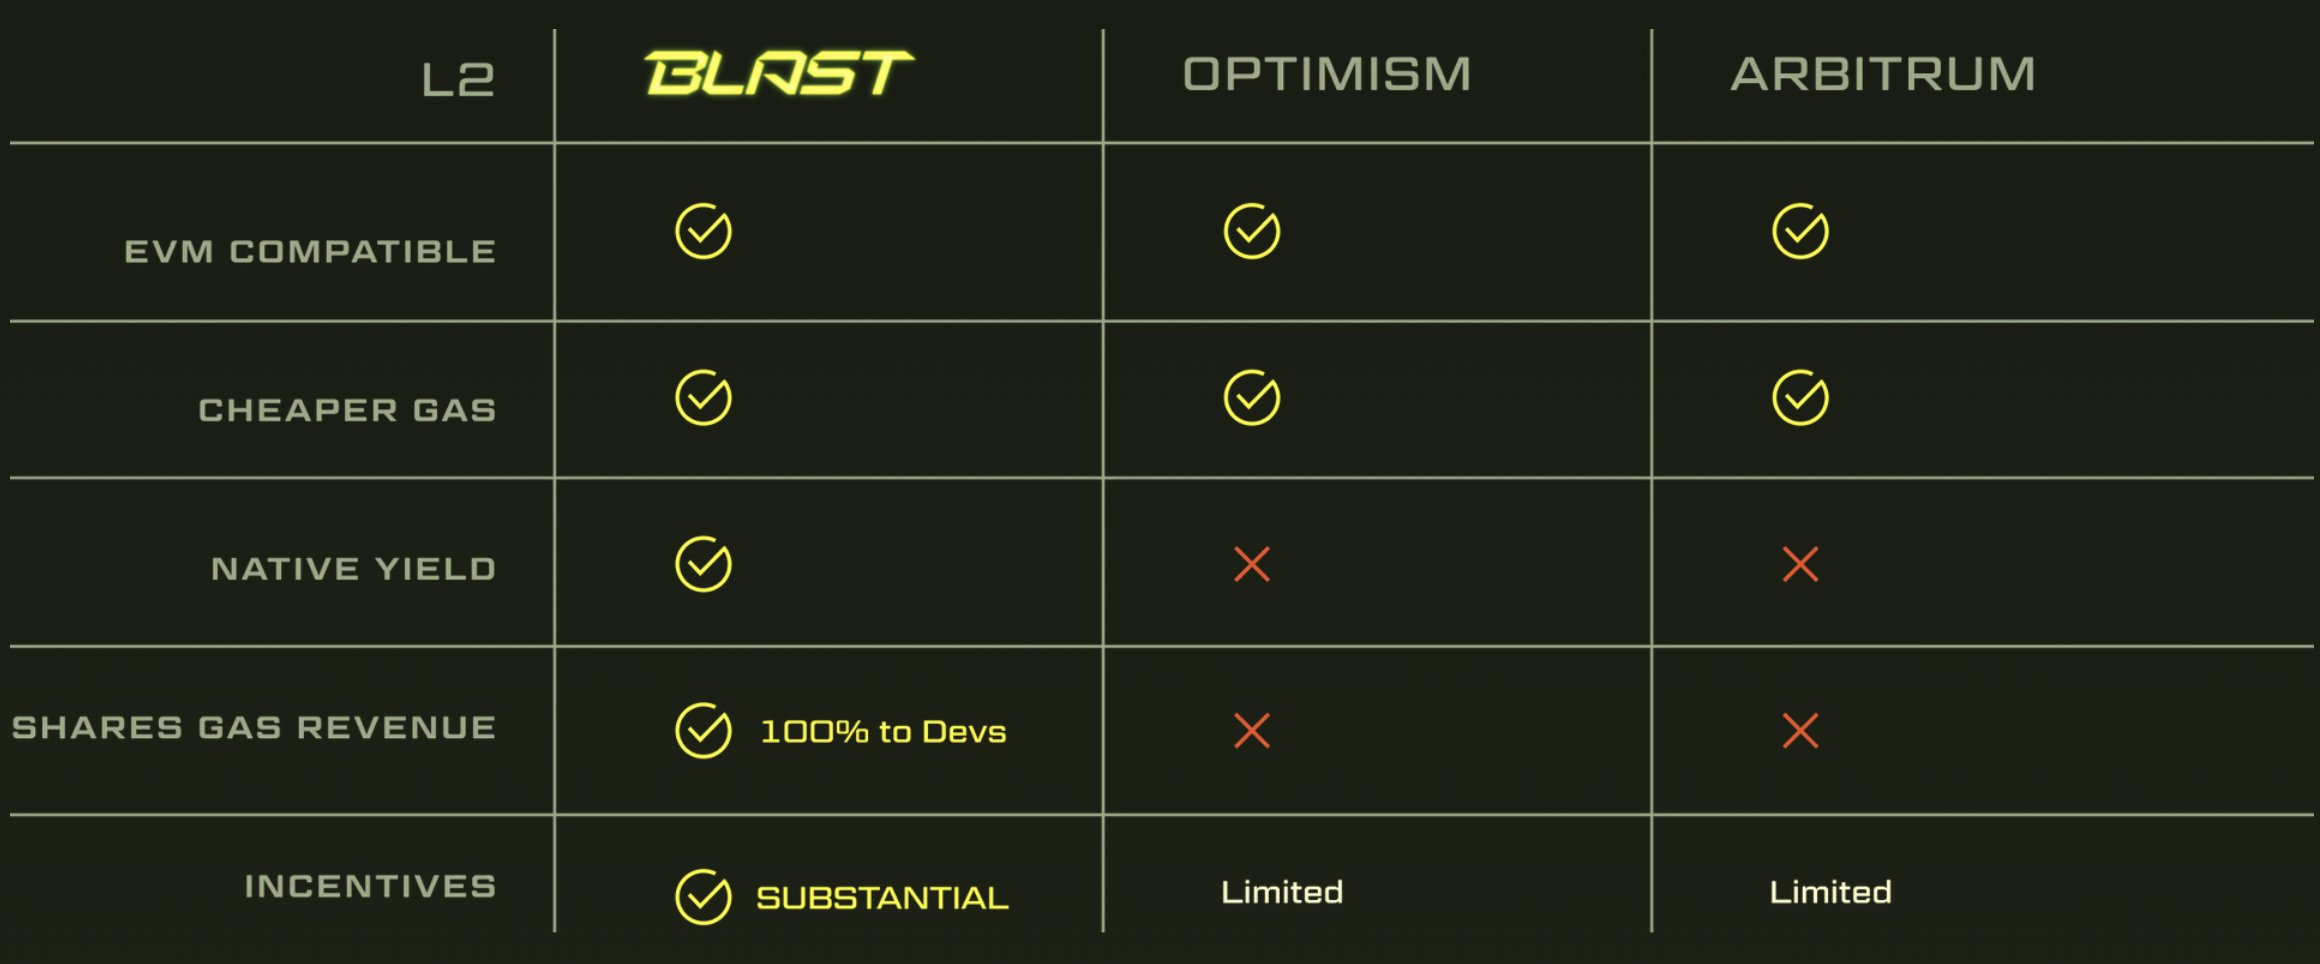 速览Blur创始人推出的生息型Layer2 Blast：复刻Blur积分空投玩法，明年1月测试网上线开启活动